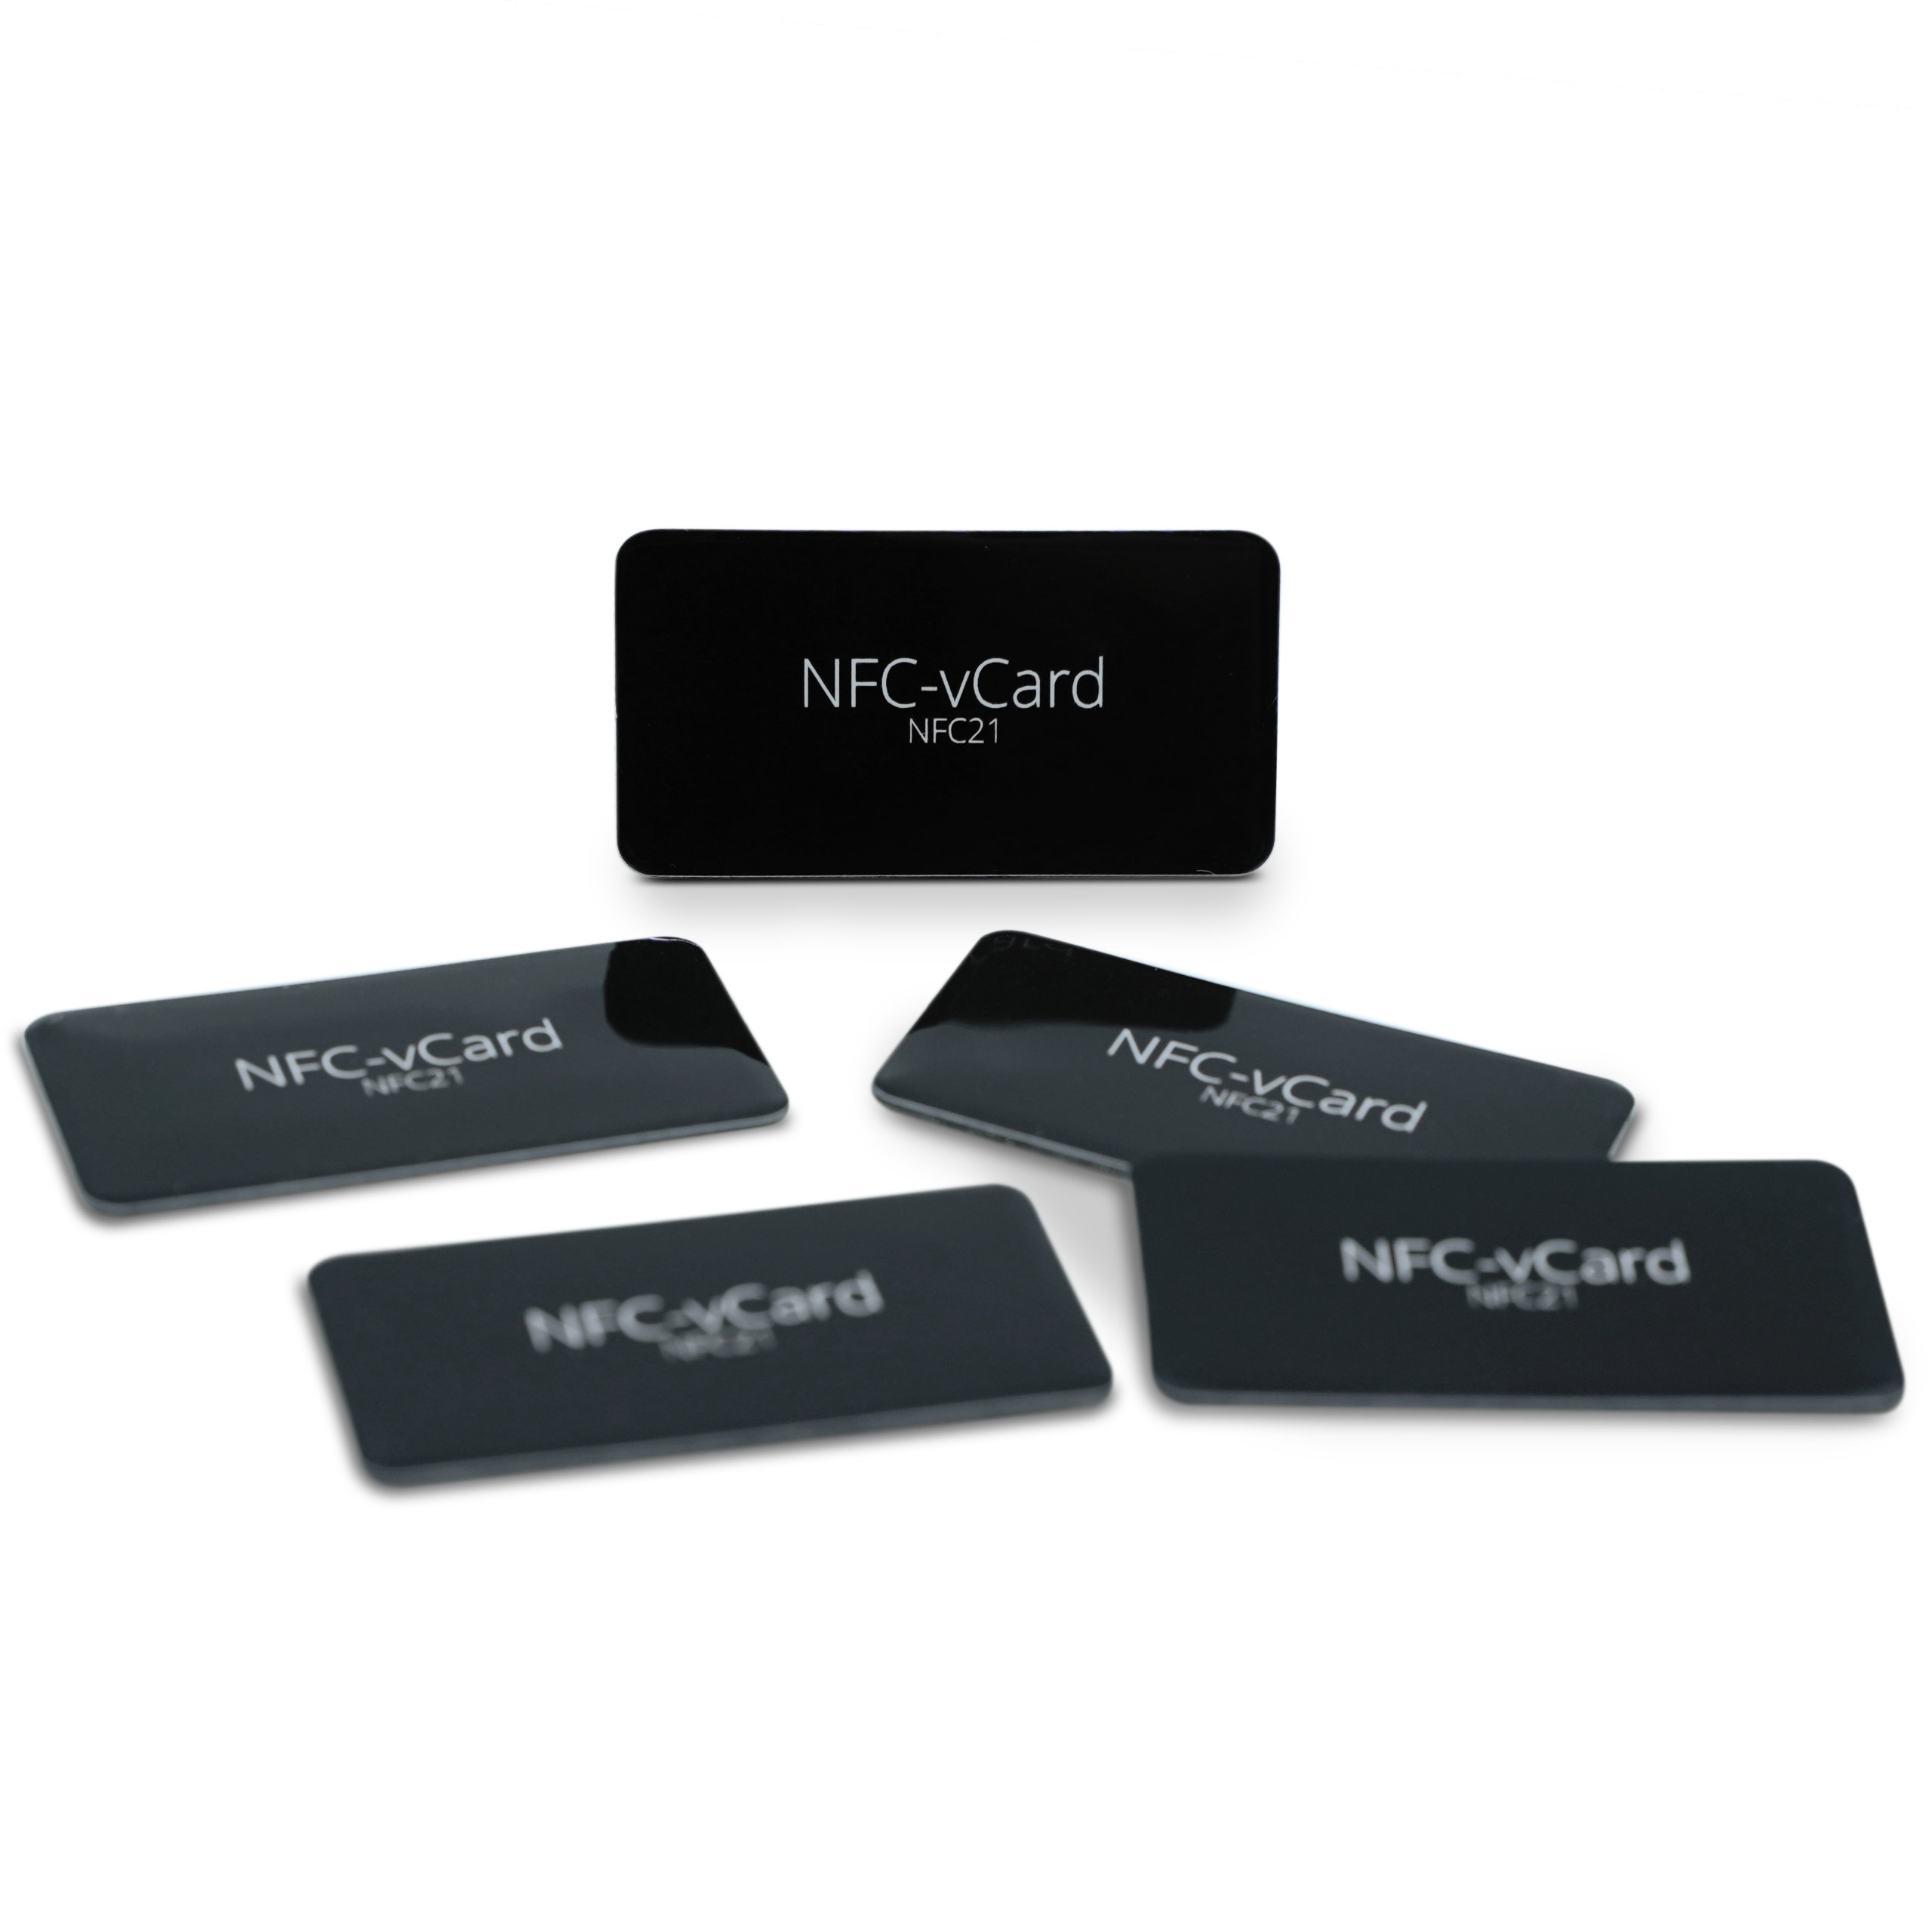 5 NFC-vCard Sticker - Digitale Visitenkarte - inkl. NFC-vCard Zugang - PET - 35 x 18 mm - schwarz